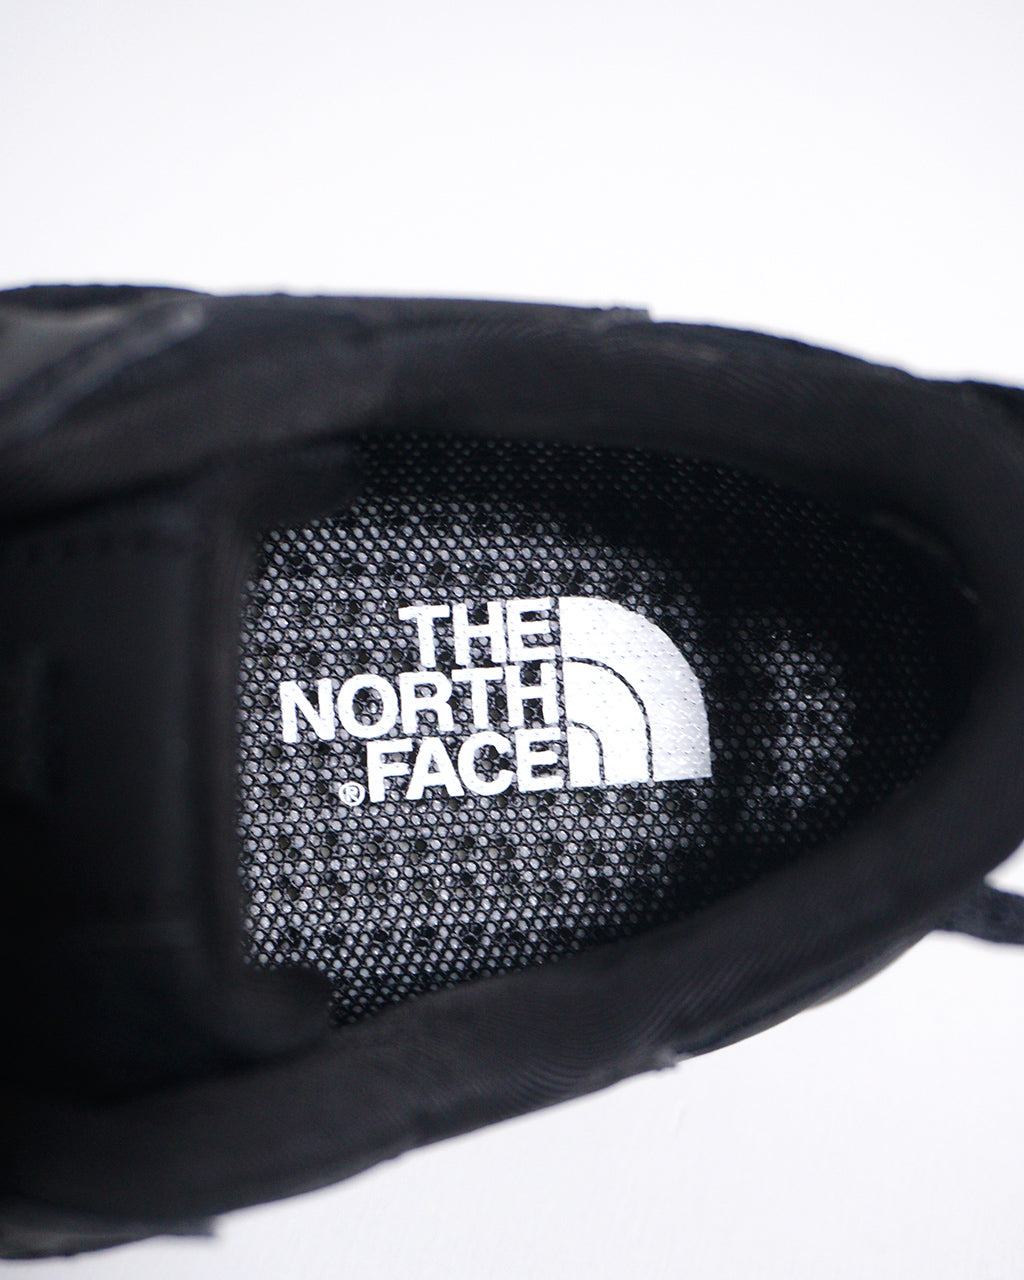 THE NORTH FACE ノースフェイス ベクティブ タラバル ブリーズ VECTIV Taraval Breeze スニーカー NF02440【送料無料】